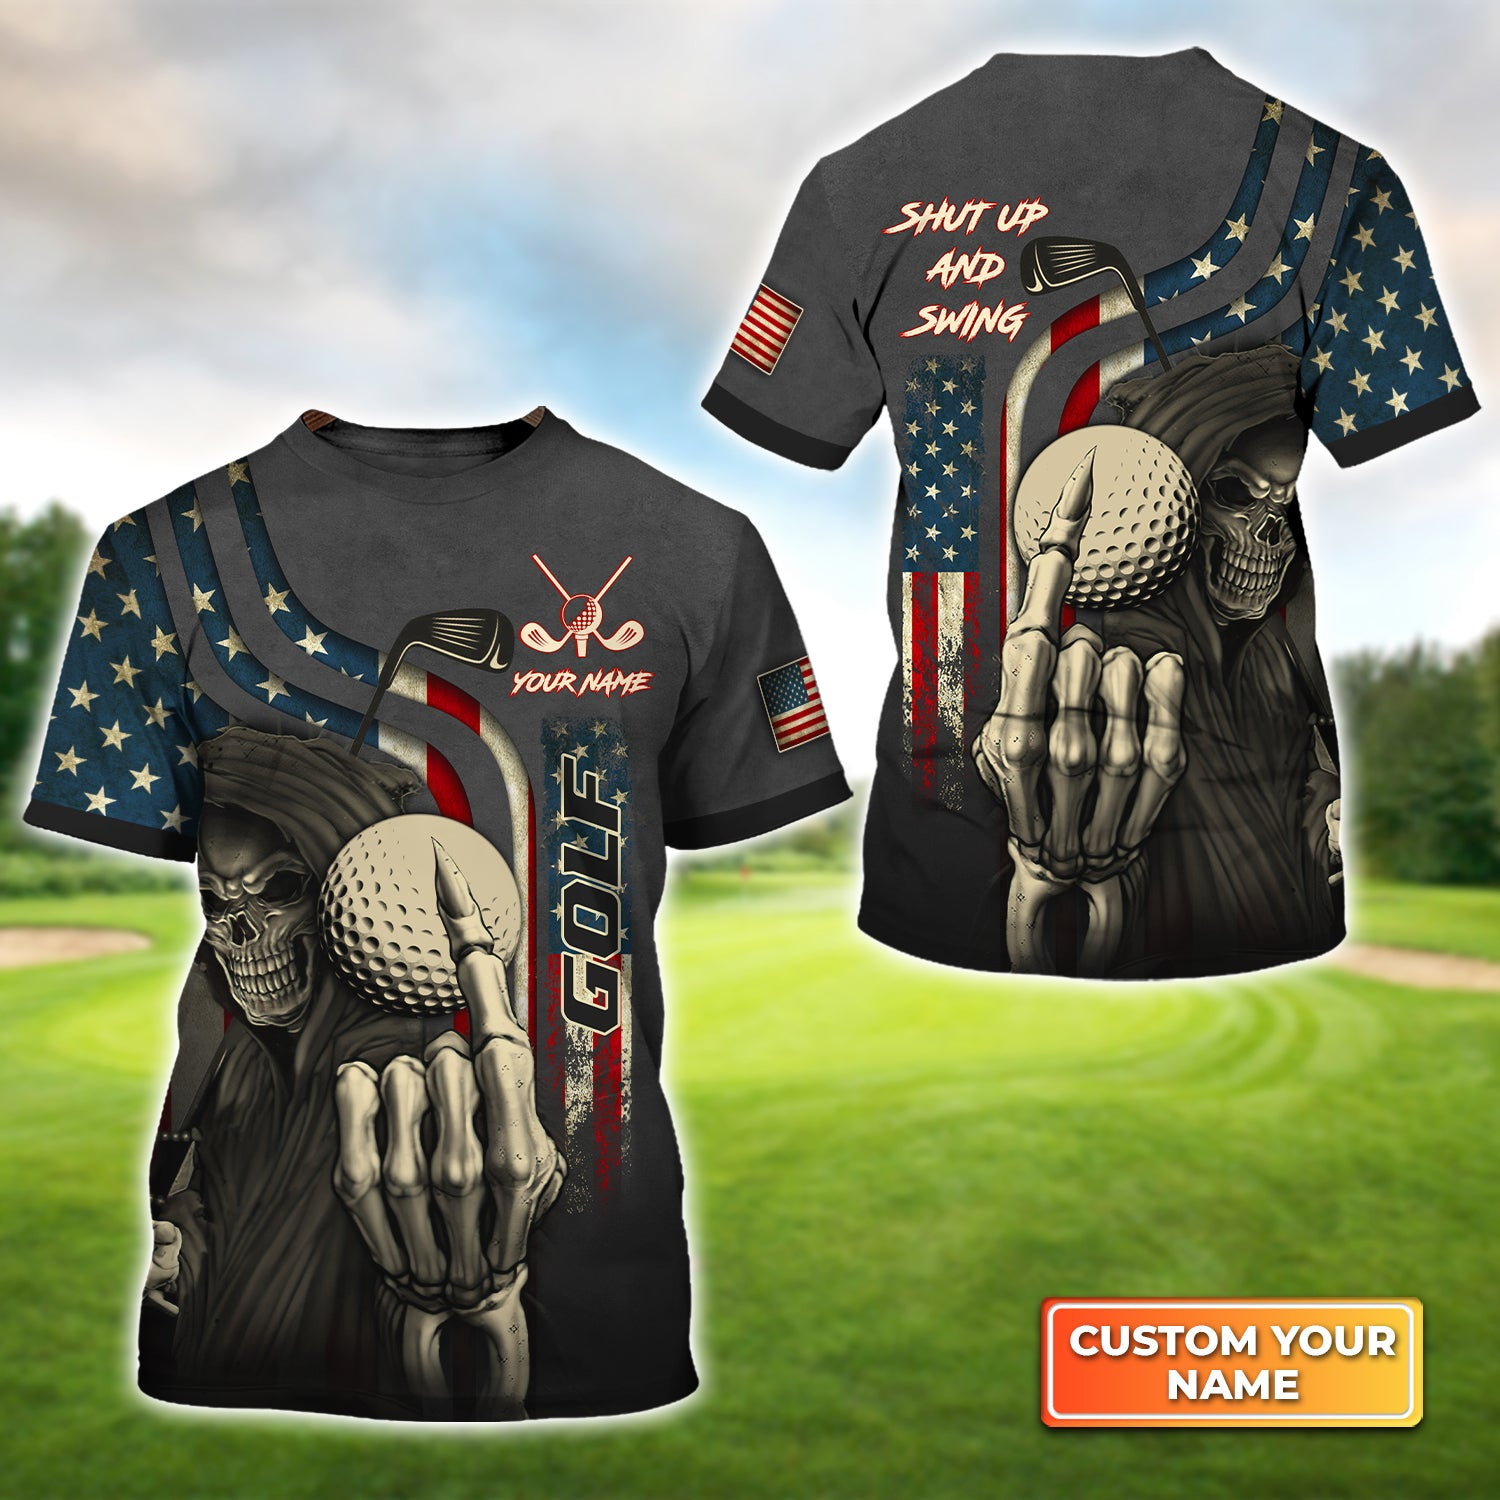 Golf T shirt Custom Name - America Flag Skull Golf Shut Up And Swing T-shirt - Gift For Friend, Family, Golf Lovers